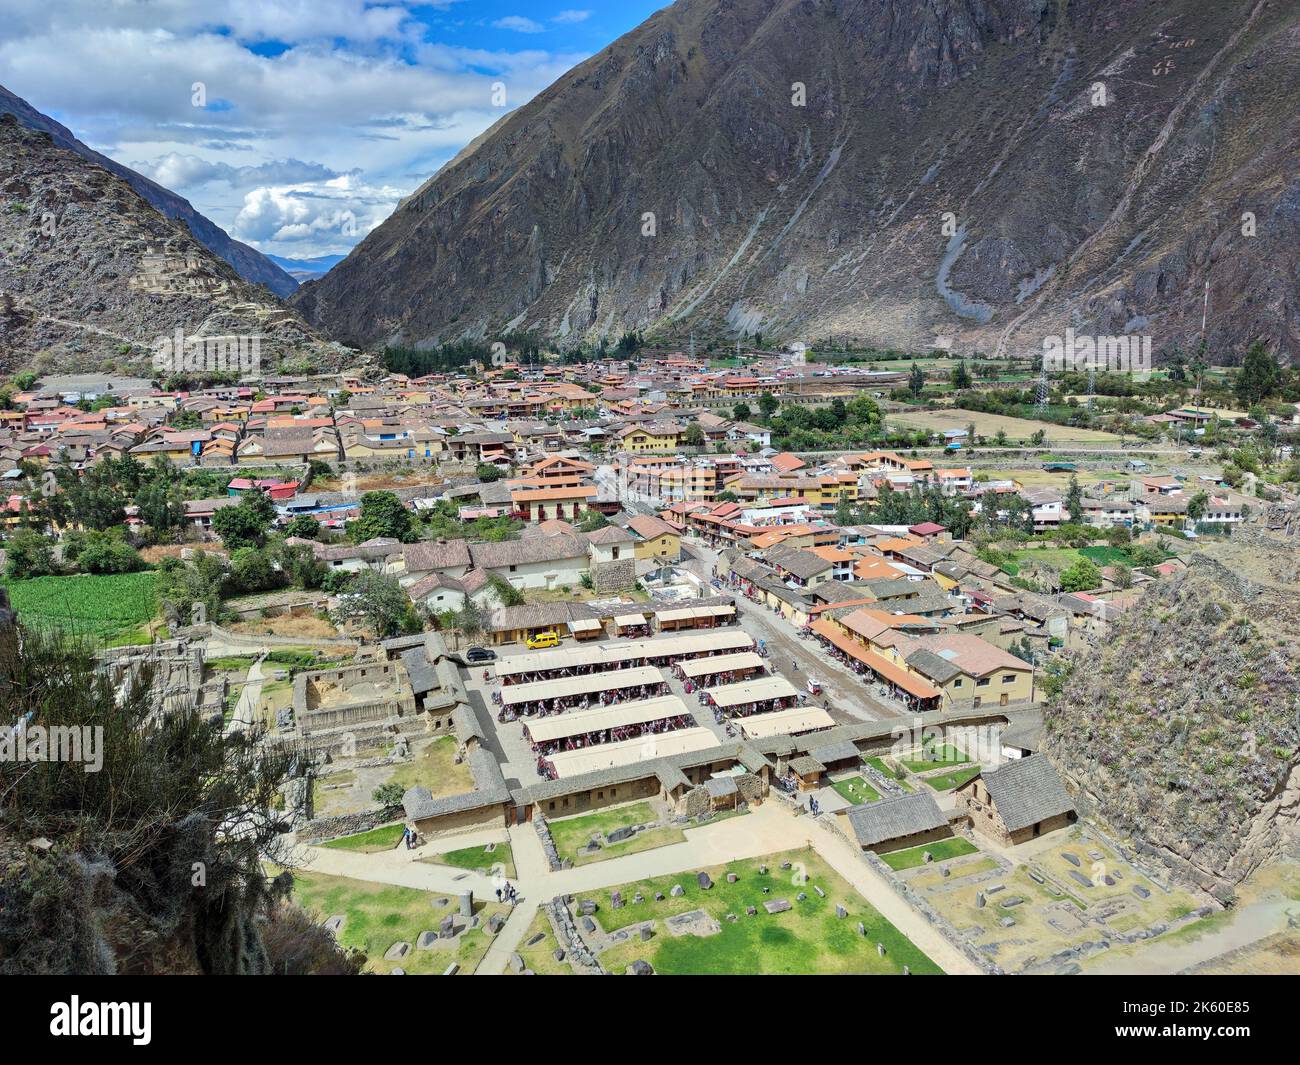 Ollantaytambo, vue panoramique de cette ville dans la province d'Urubamba, région de Cusco, Pérou. Pendant l'Empire Inca, c'était la succession royale de l'empereur. Banque D'Images